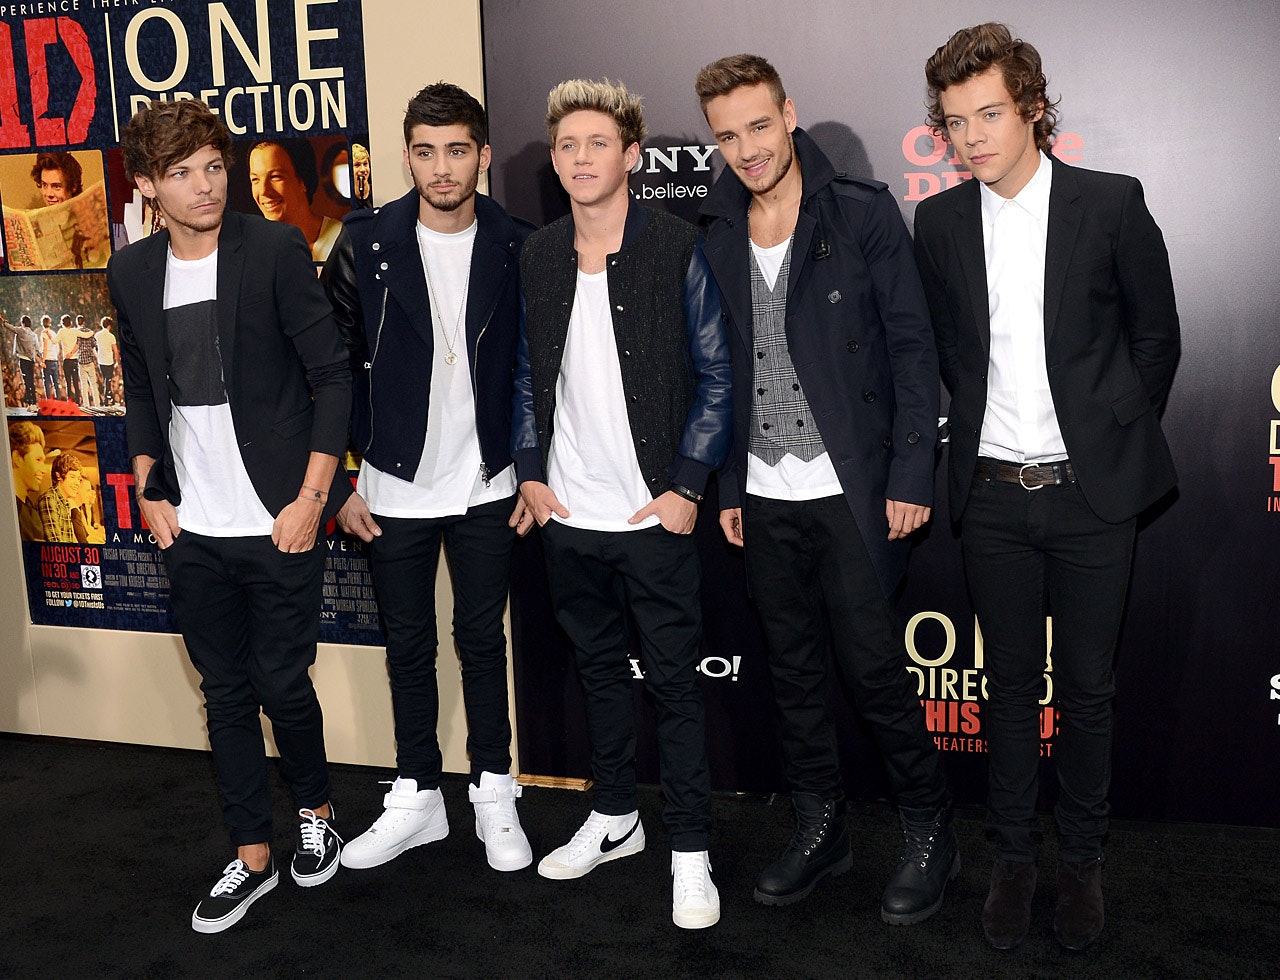 manuskript krig Bestil Hvem skal være One Direction i en film? | Vi Unge